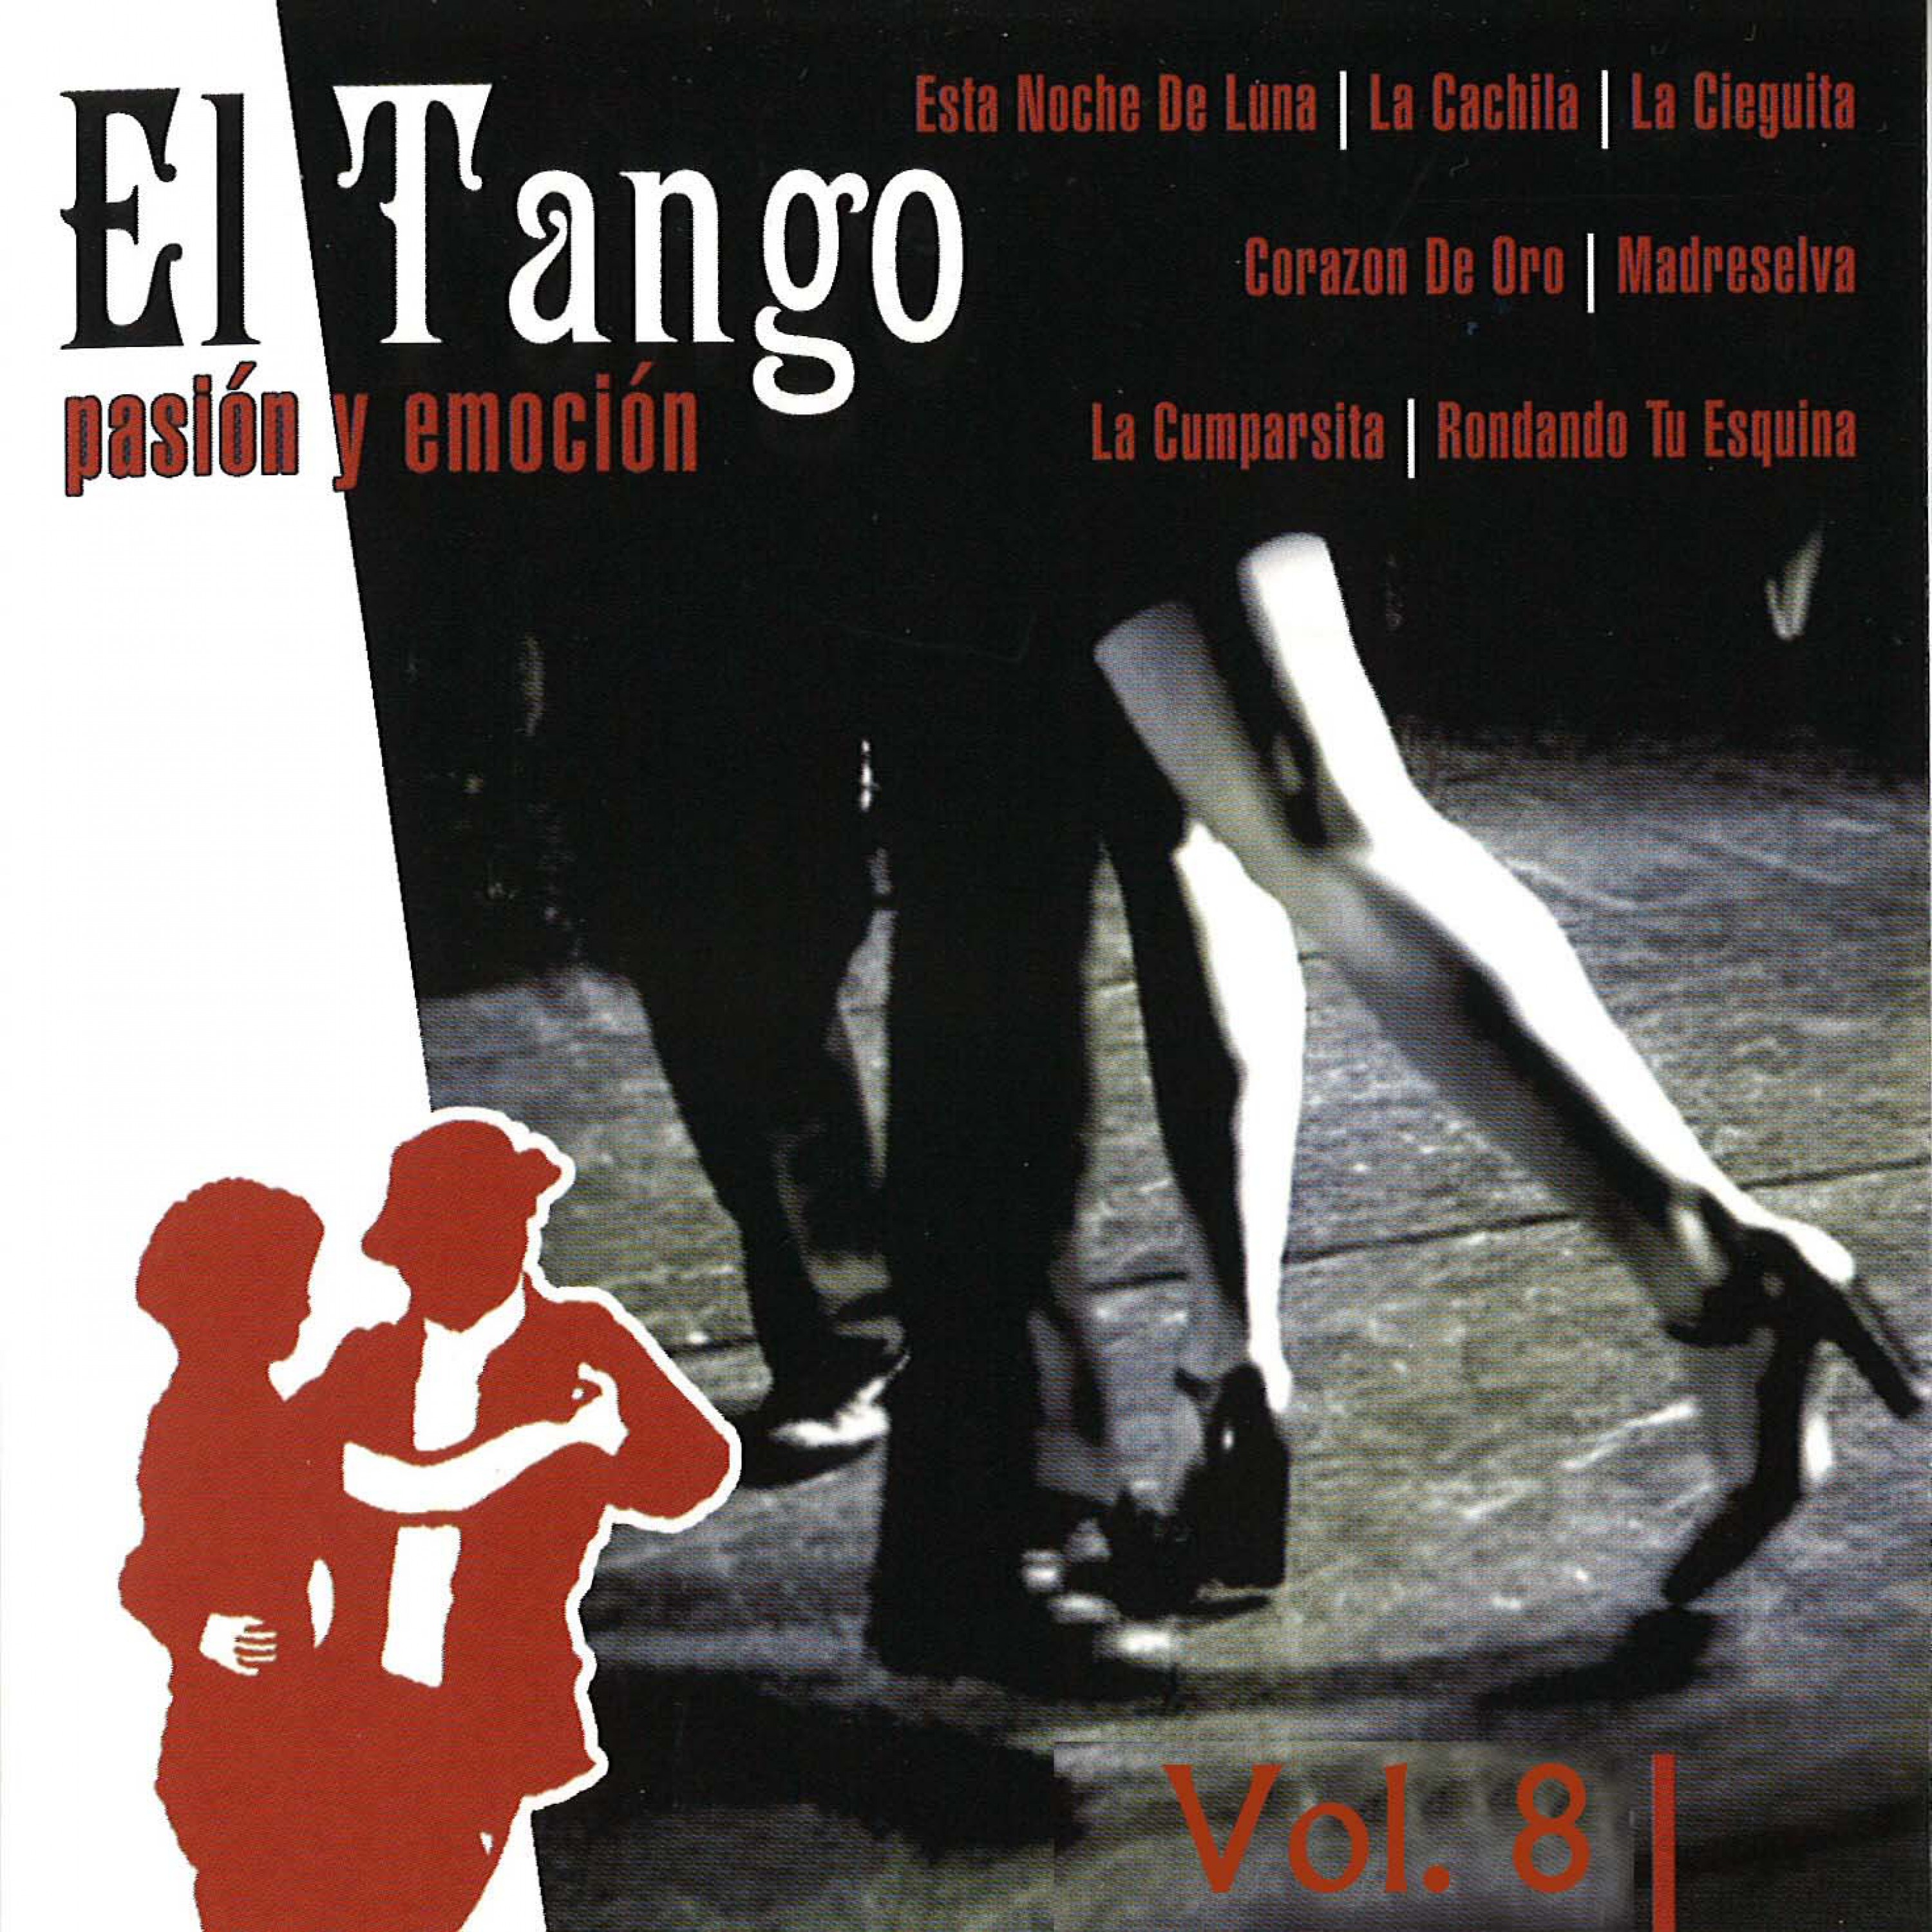 El Tango Vol. 8